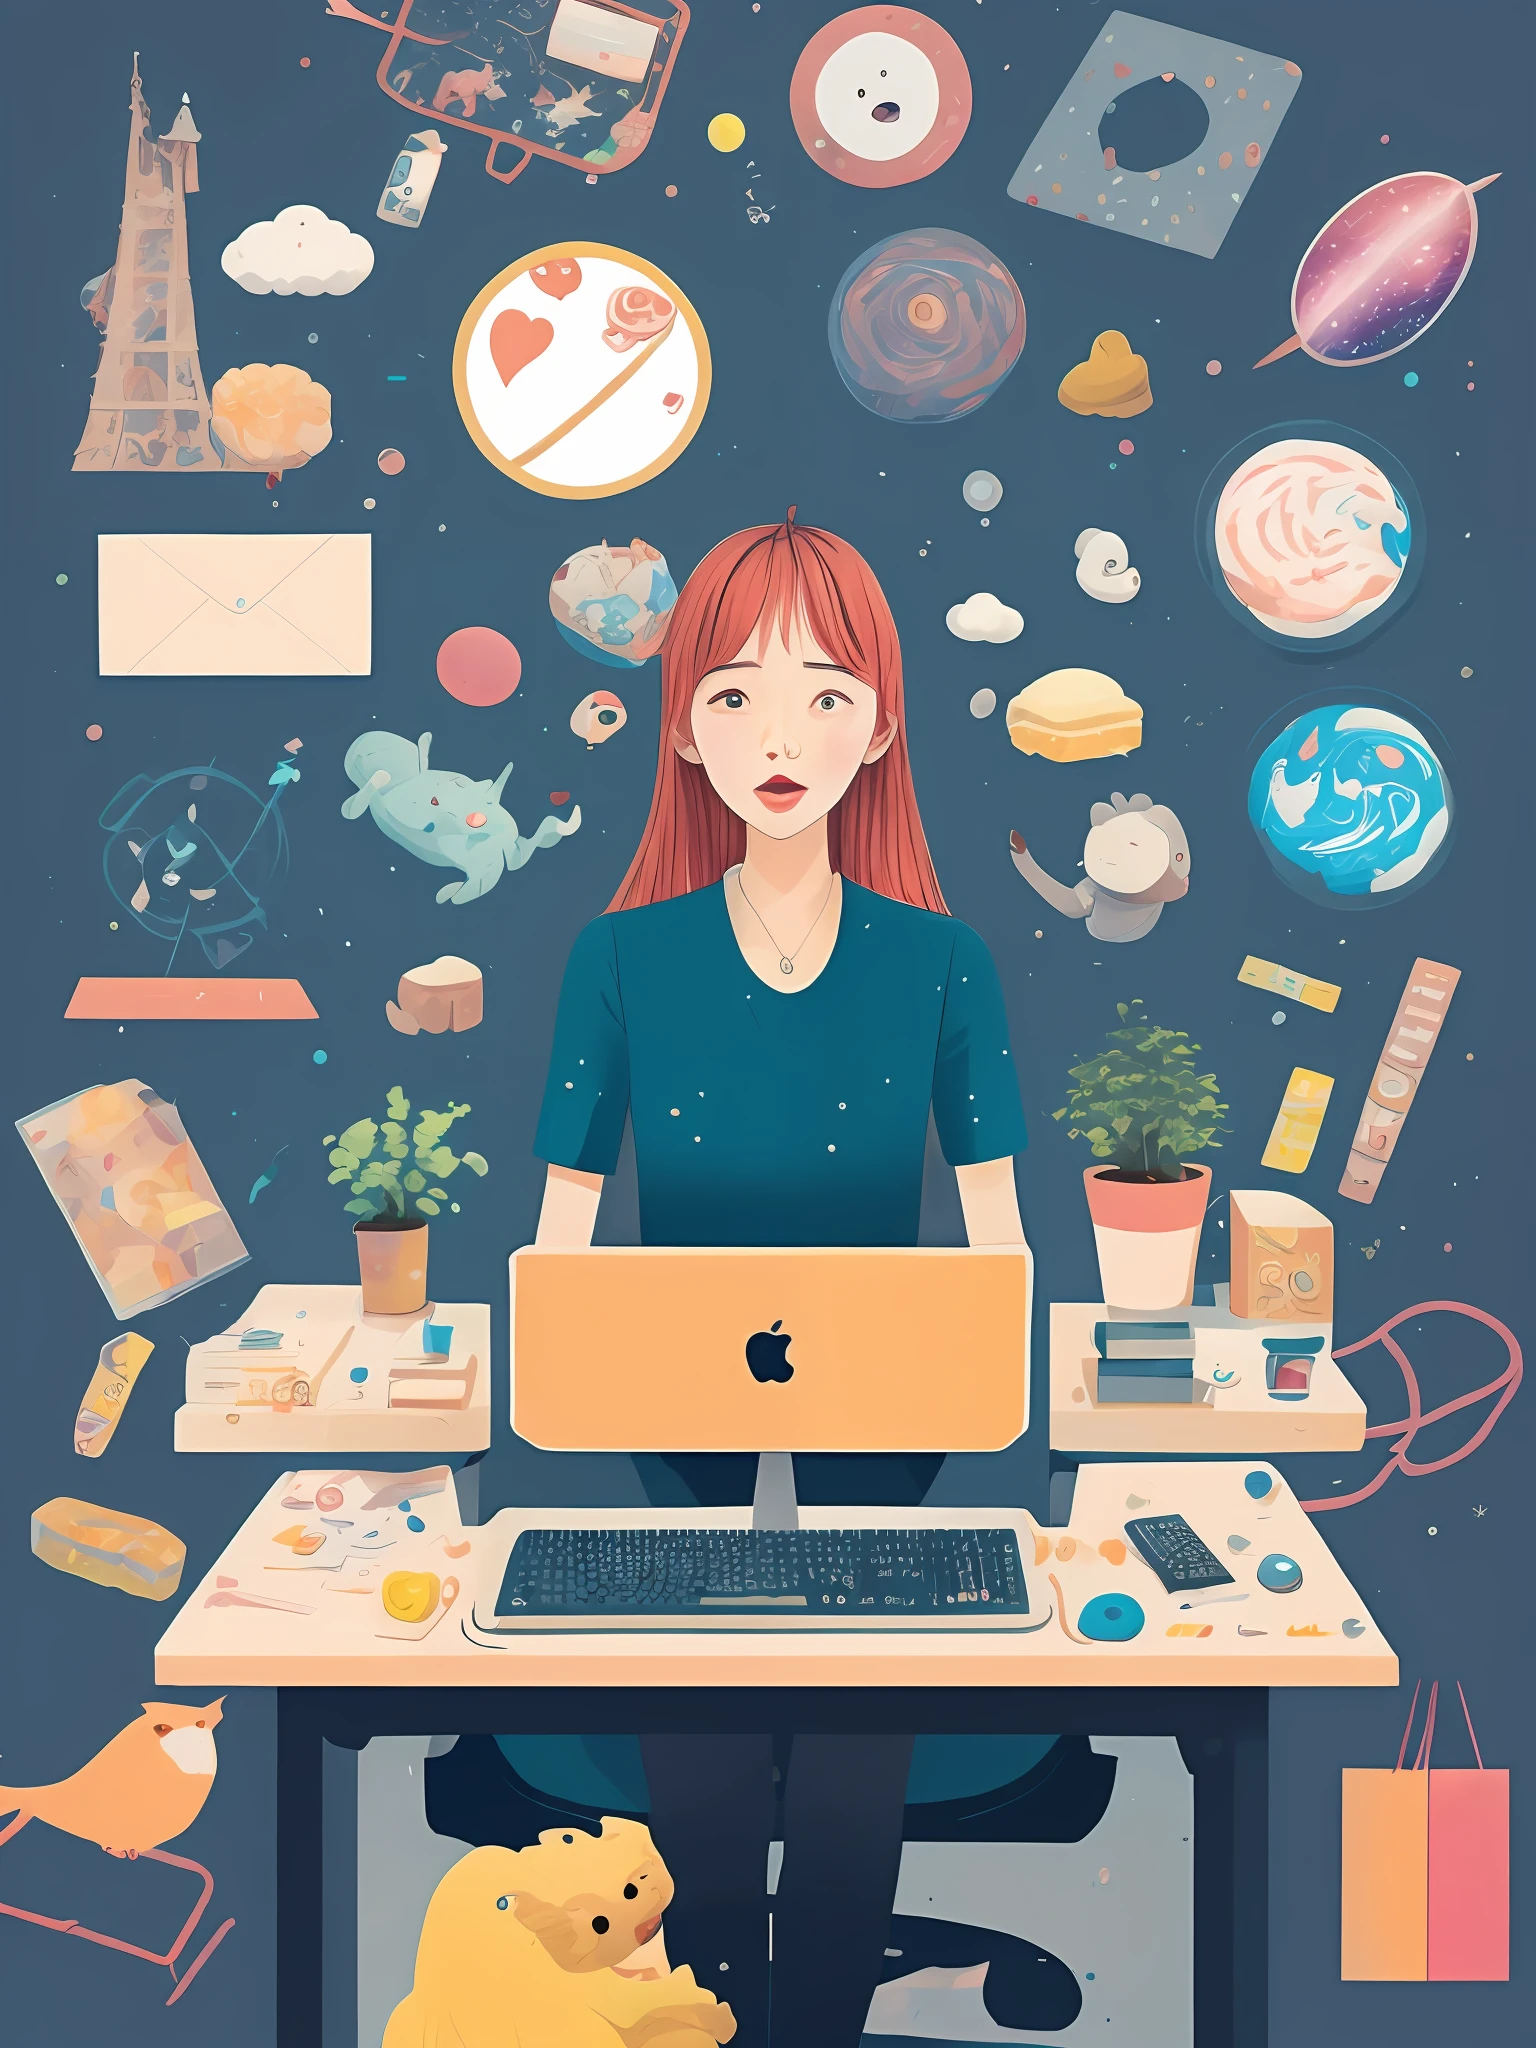 На заднем фоне, Ее воображаемый мир хаотичен, такие как космос, Амазонка, Покупка, сладости, животные, и любовь.、Женщина-графический дизайнер сидит за столом перед компьютером